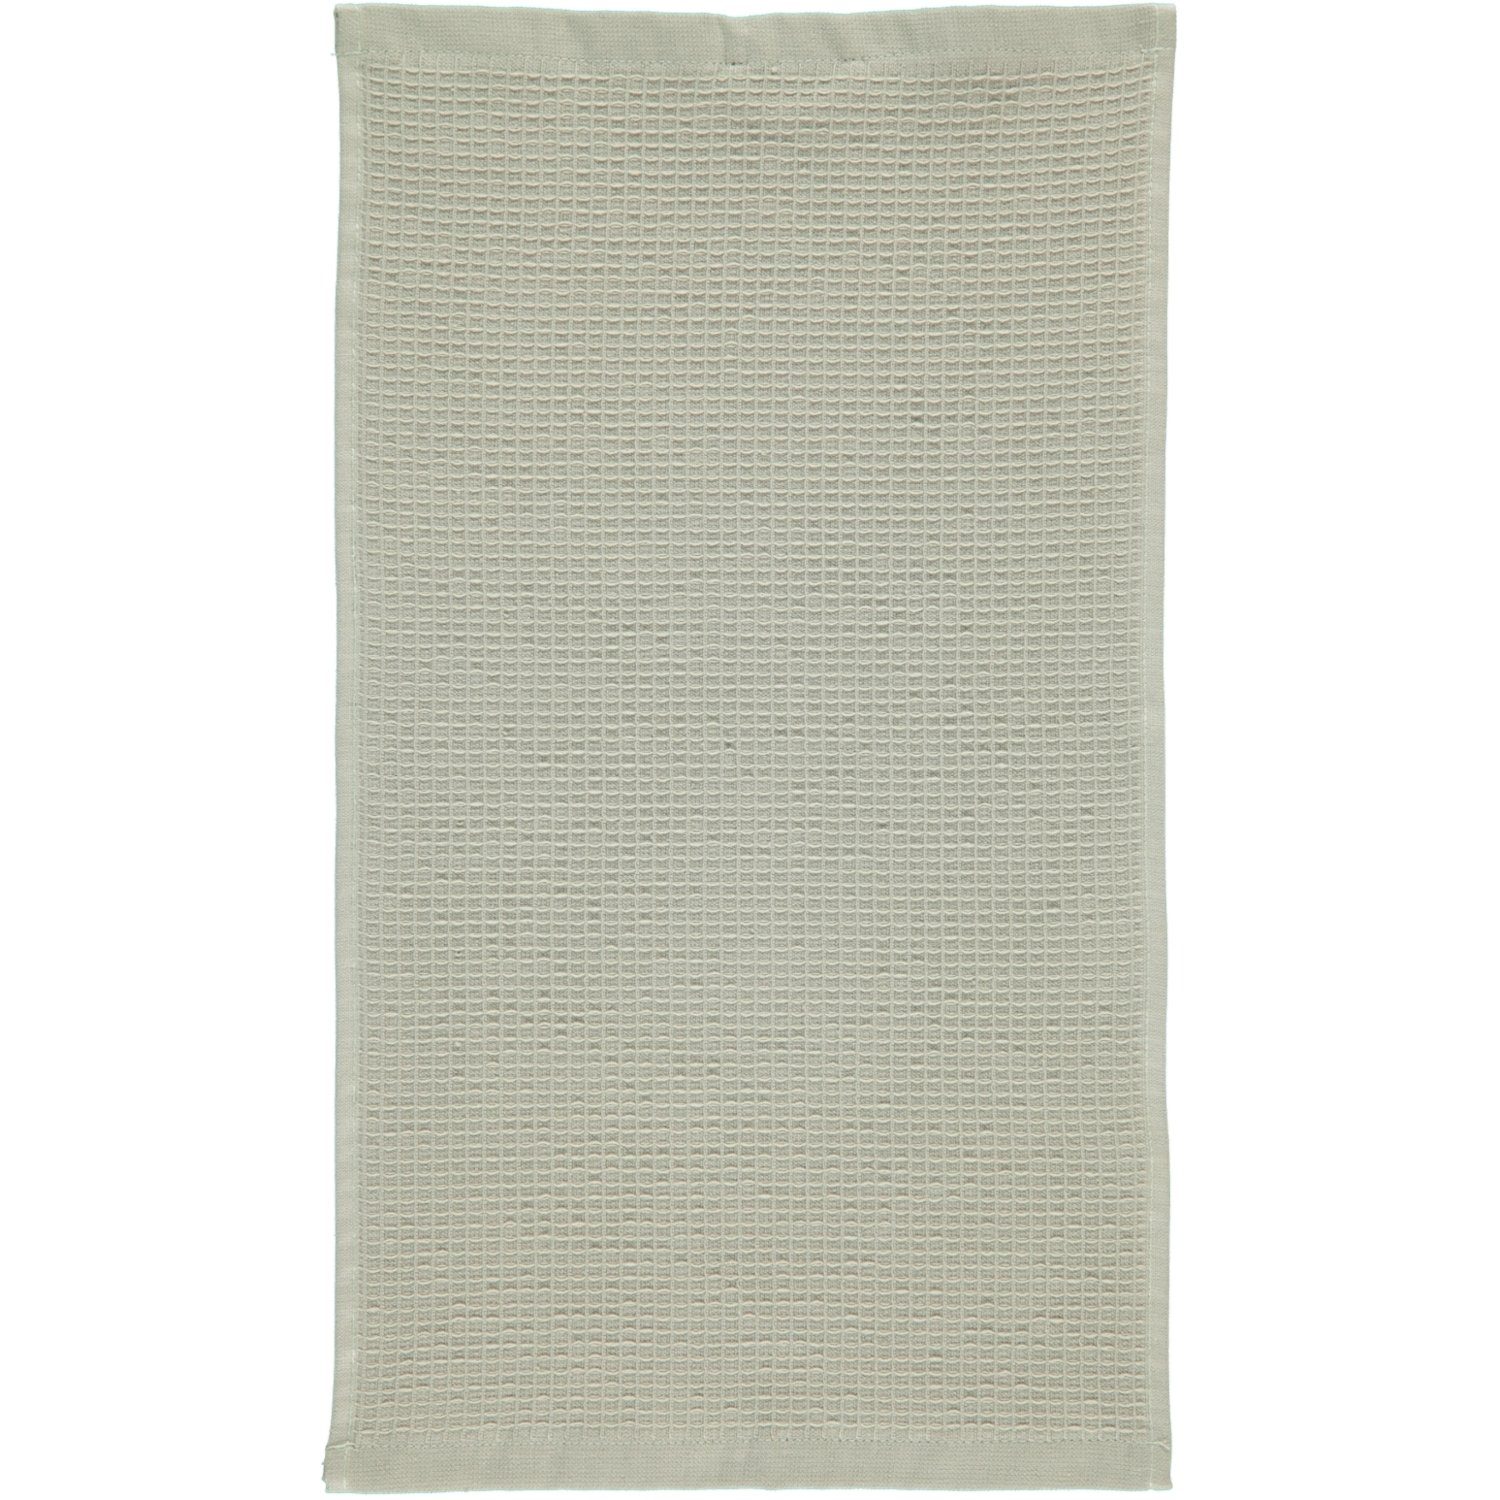 Rhomtuft Handtücher Baumwolle Face Pique, 100% Body 